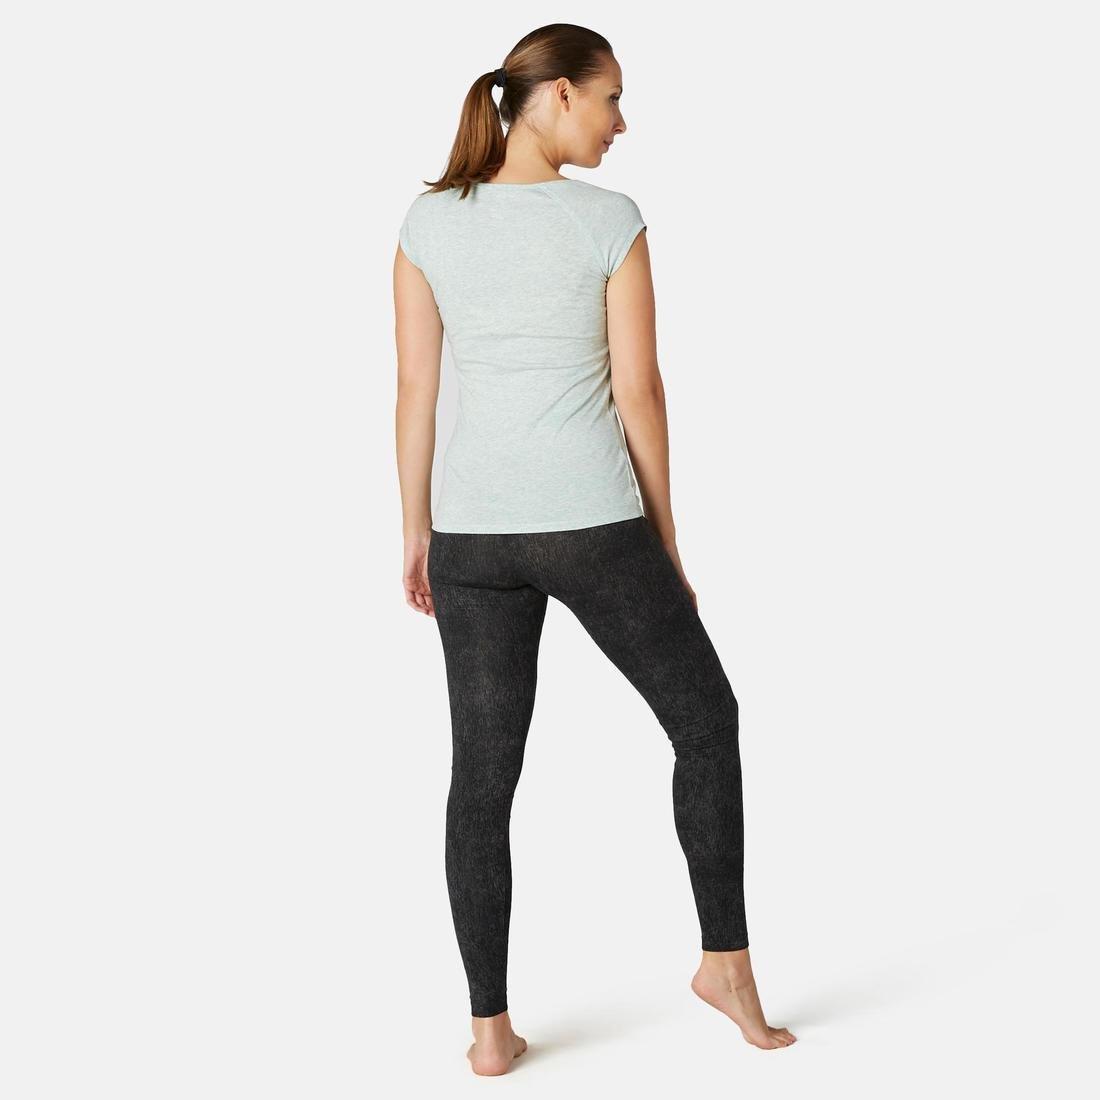 DOMYOS Fit500Womens Slim-Fit Gym Stretching Leggings, Grey